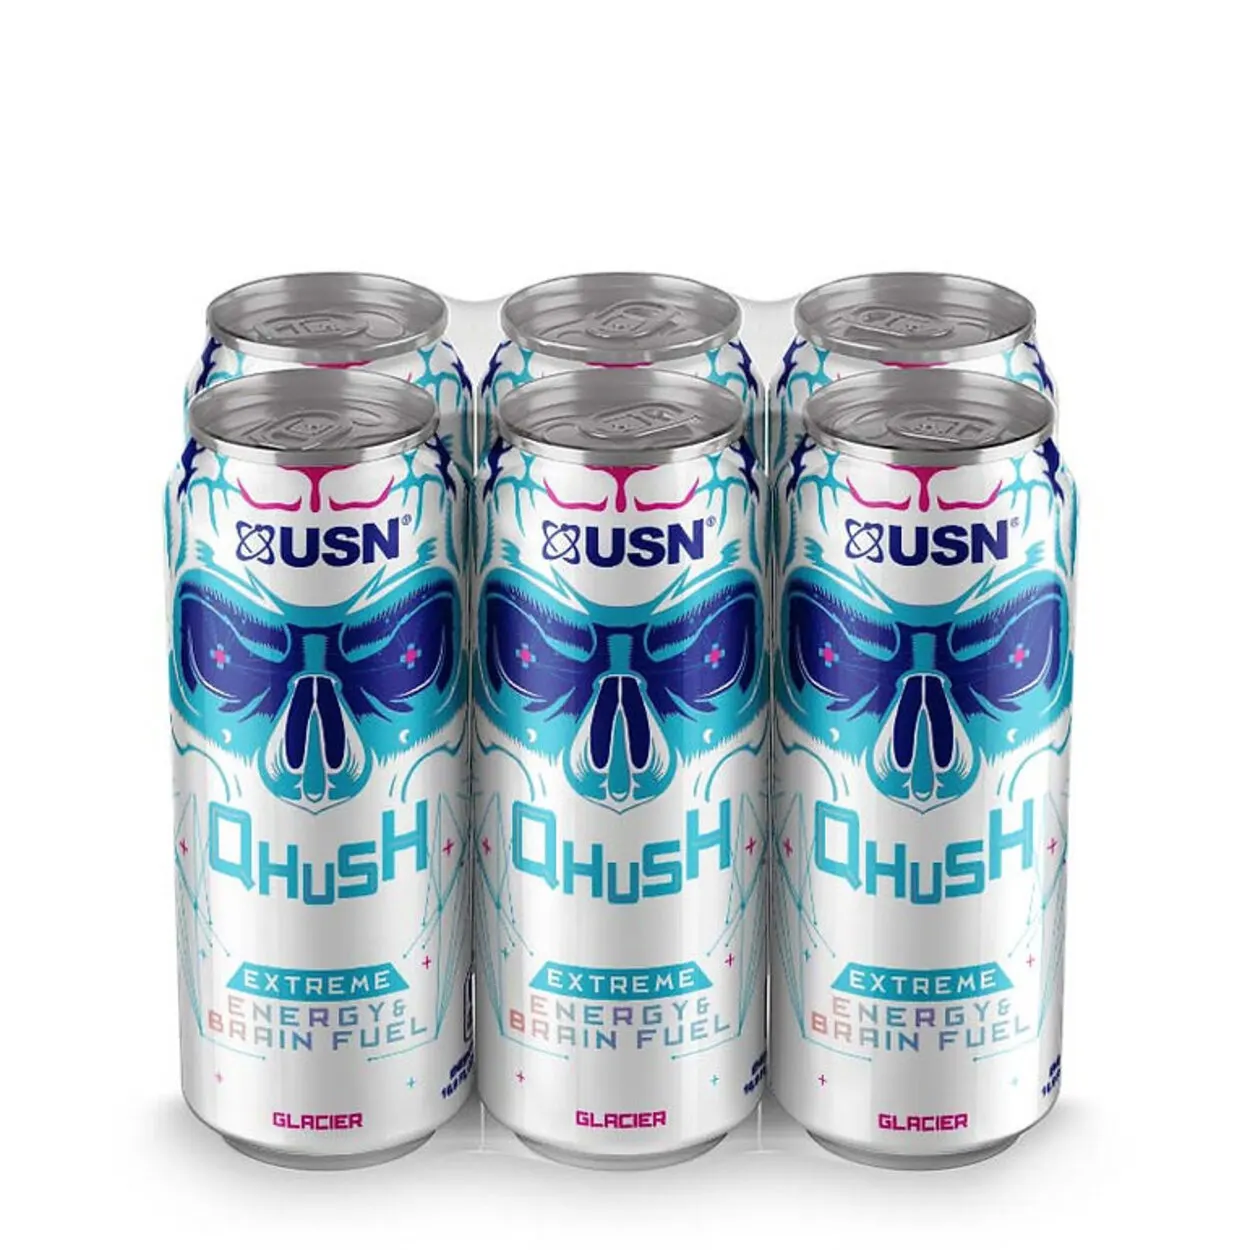 Qhush energy drink glacier flavor.